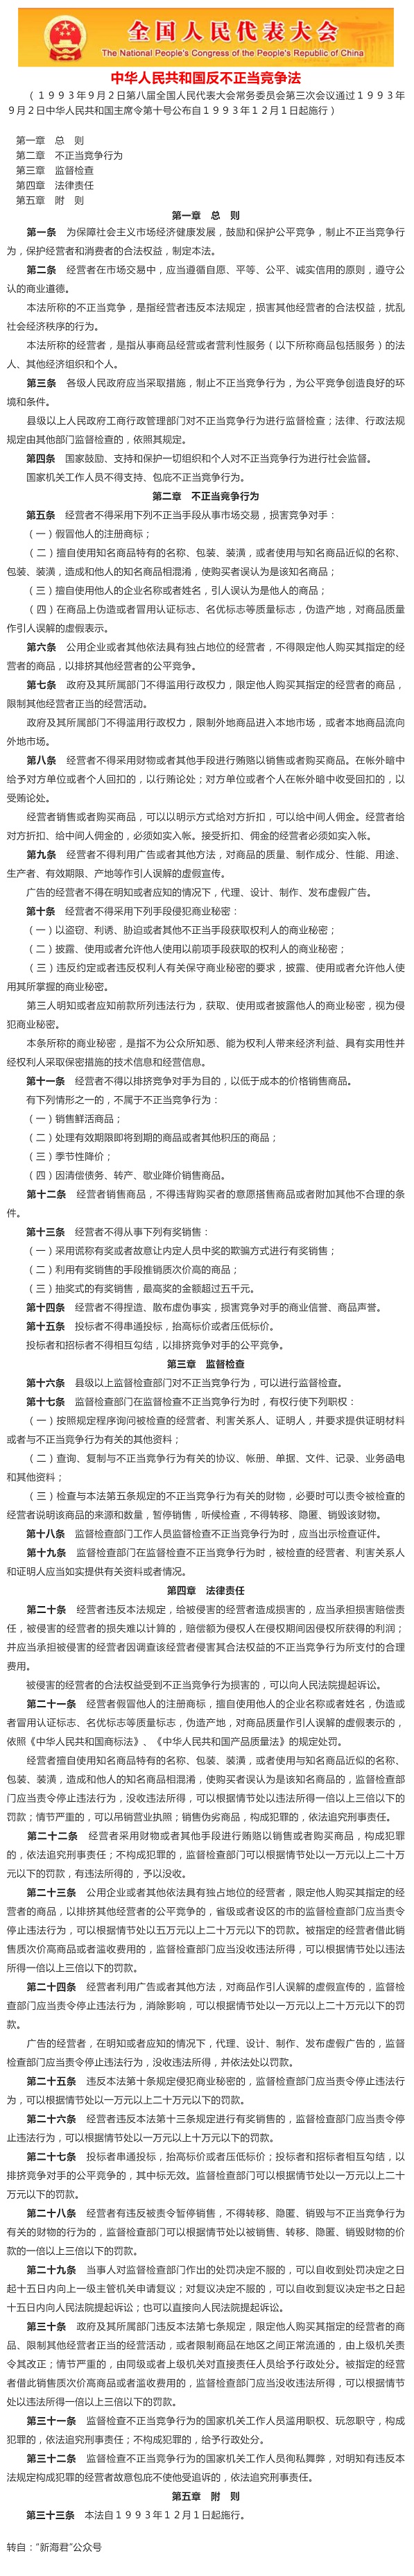 普法宣传 _ 中华人民共和国反不正当竞争法_.jpg